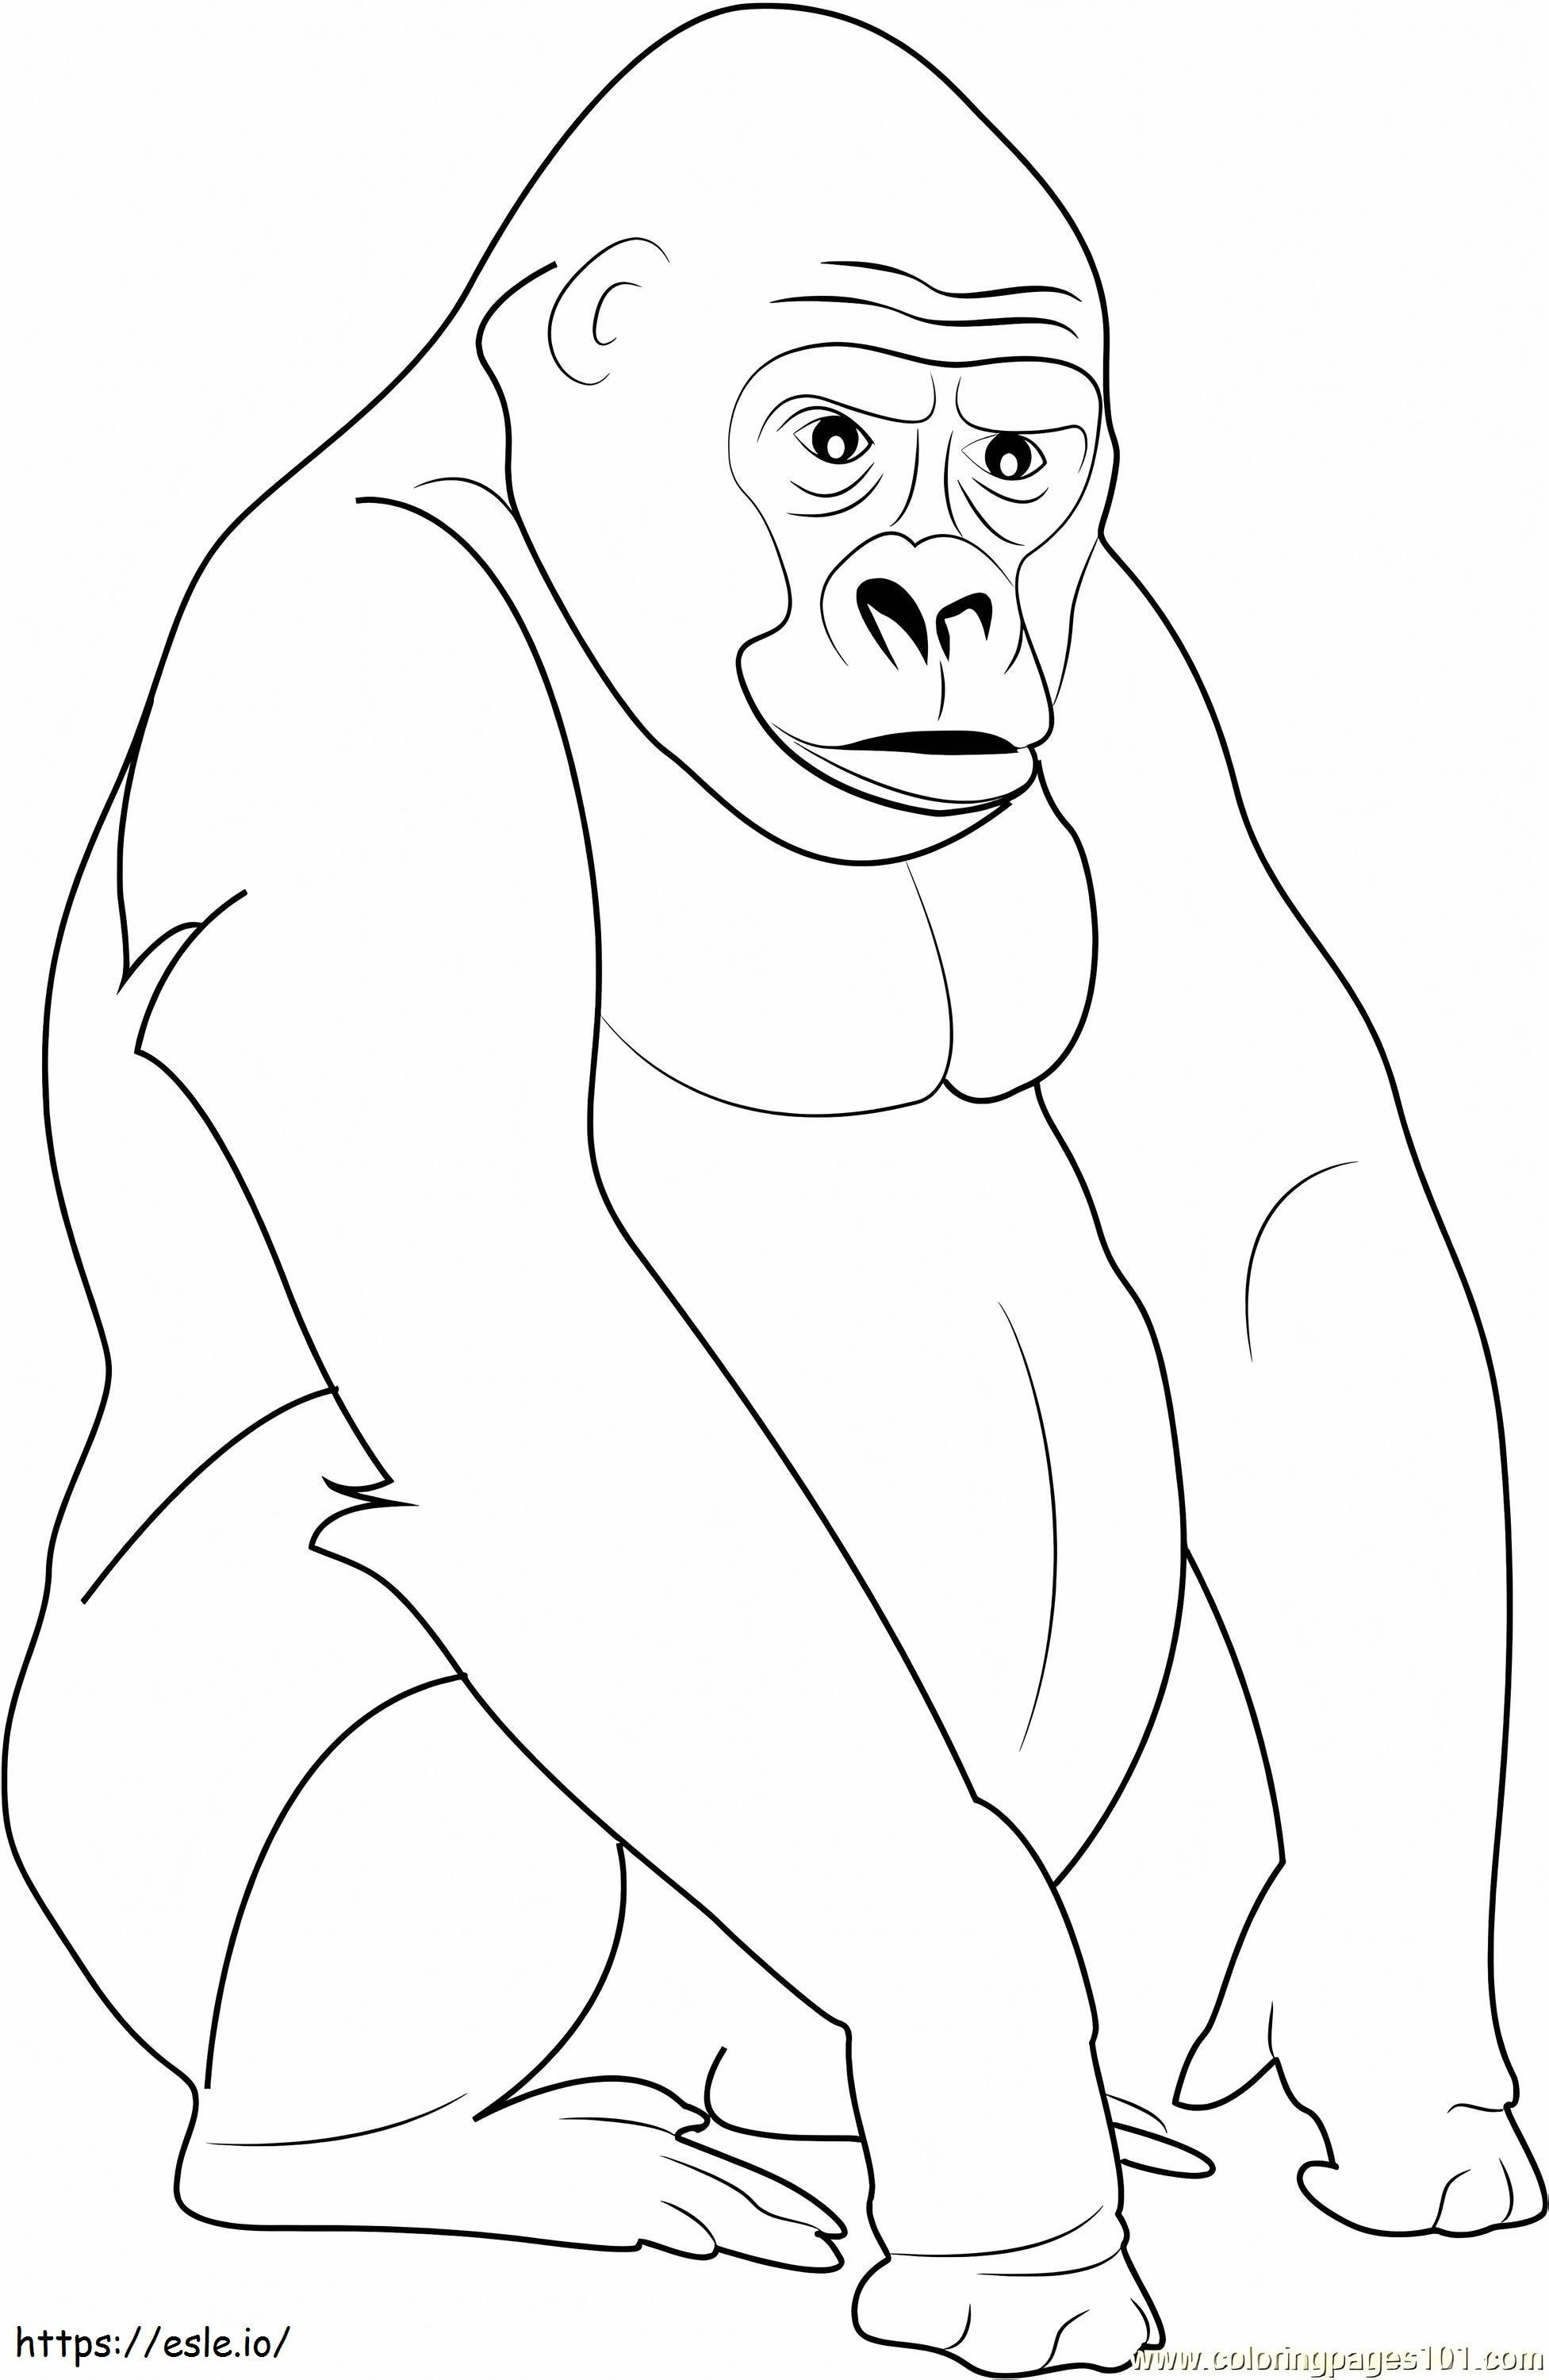 Gorila cu spatele argintiu de colorat